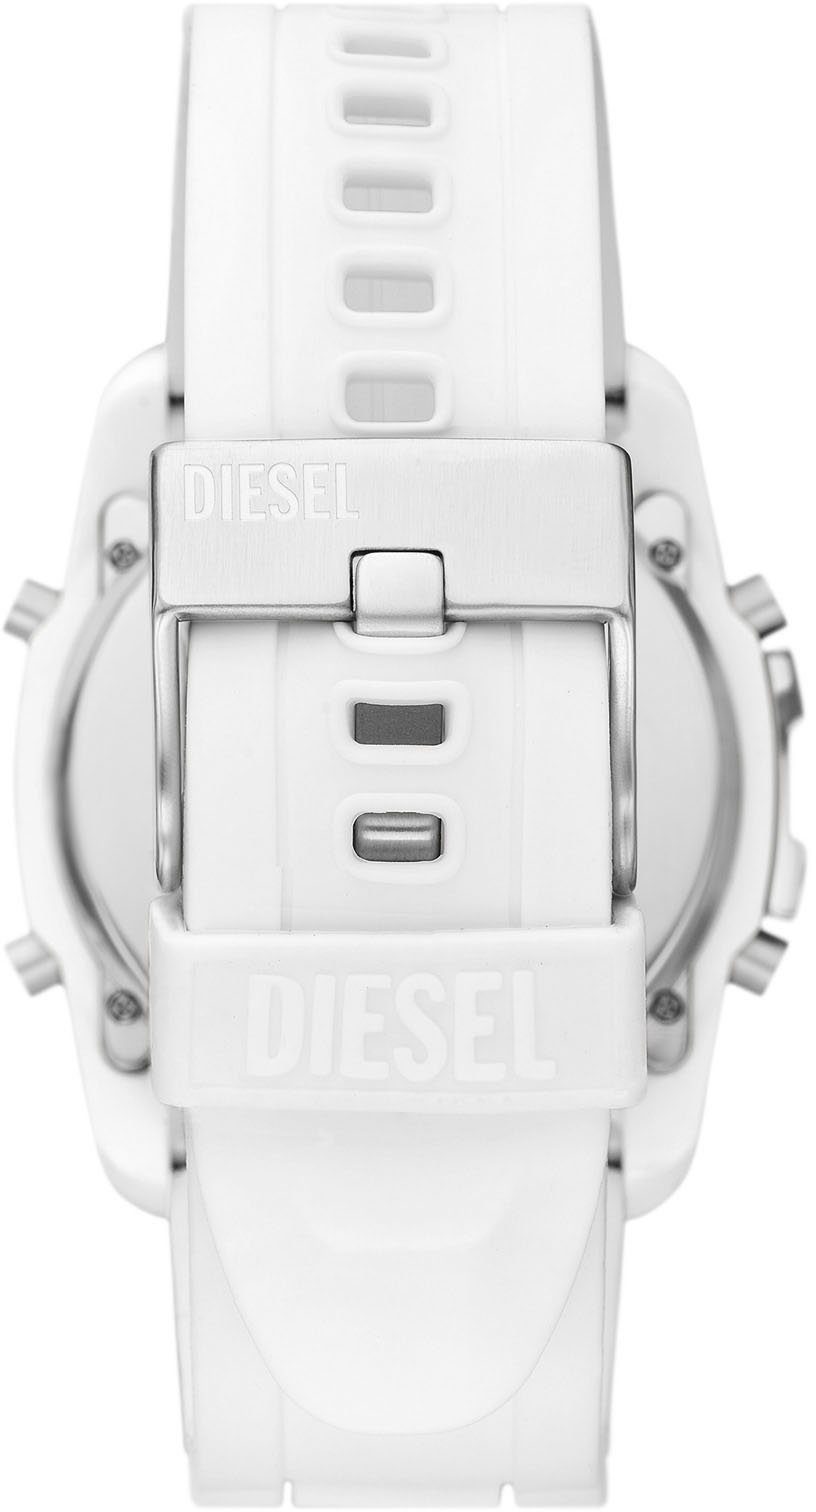 Diesel MASTER Digitaluhr CHIEF, DZ2157